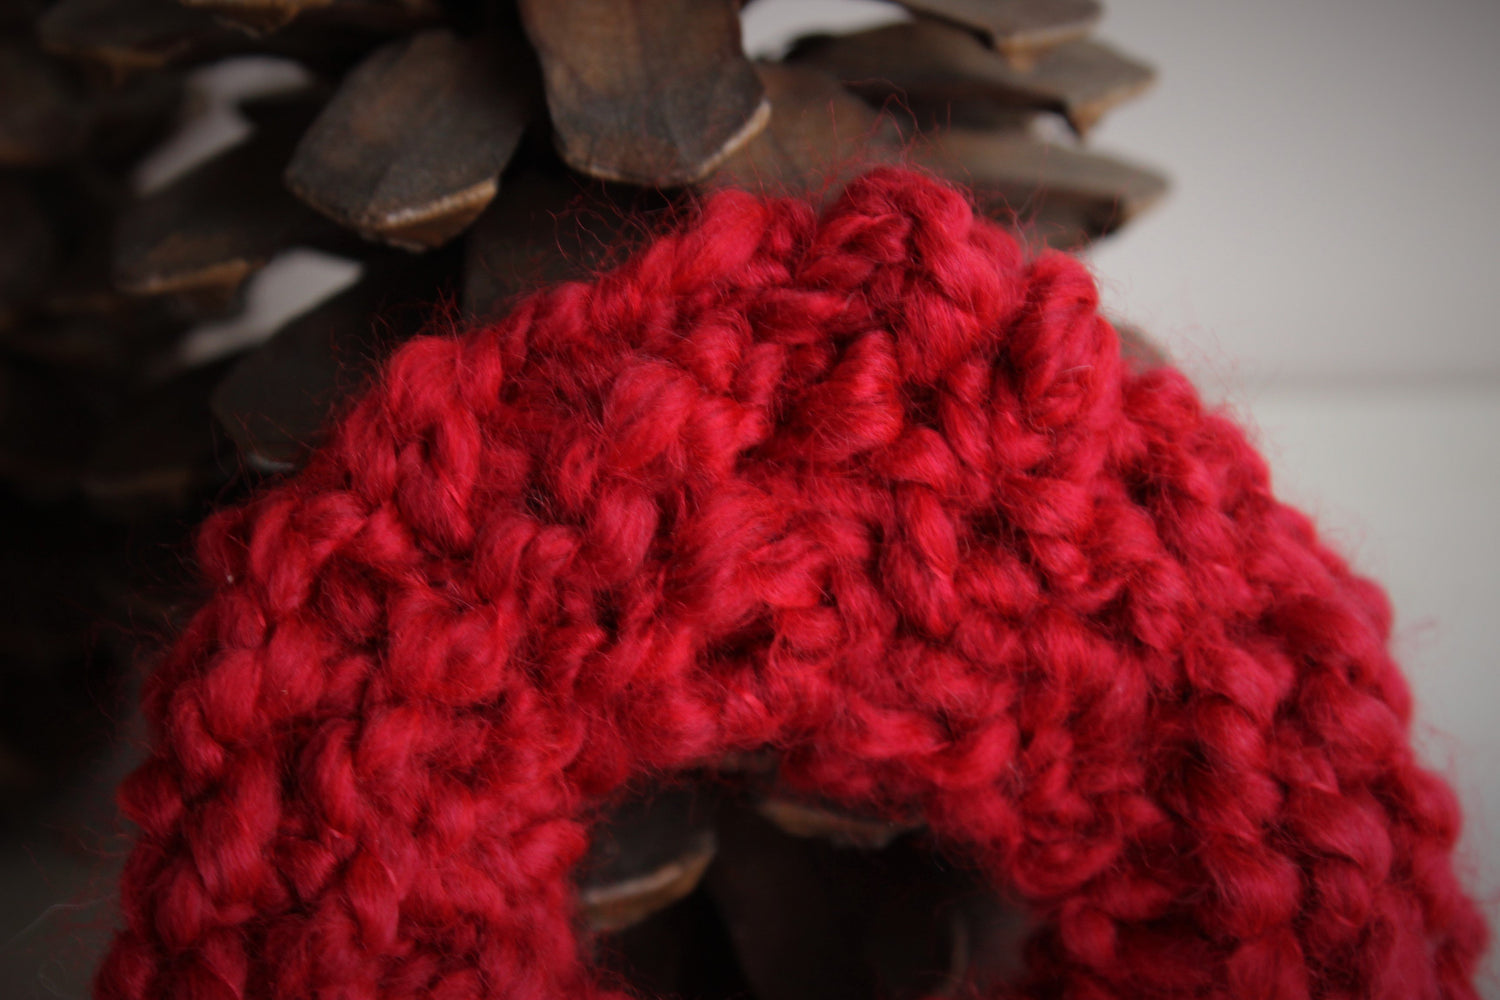 Red Hand Knit Hair Tie Scrunchie